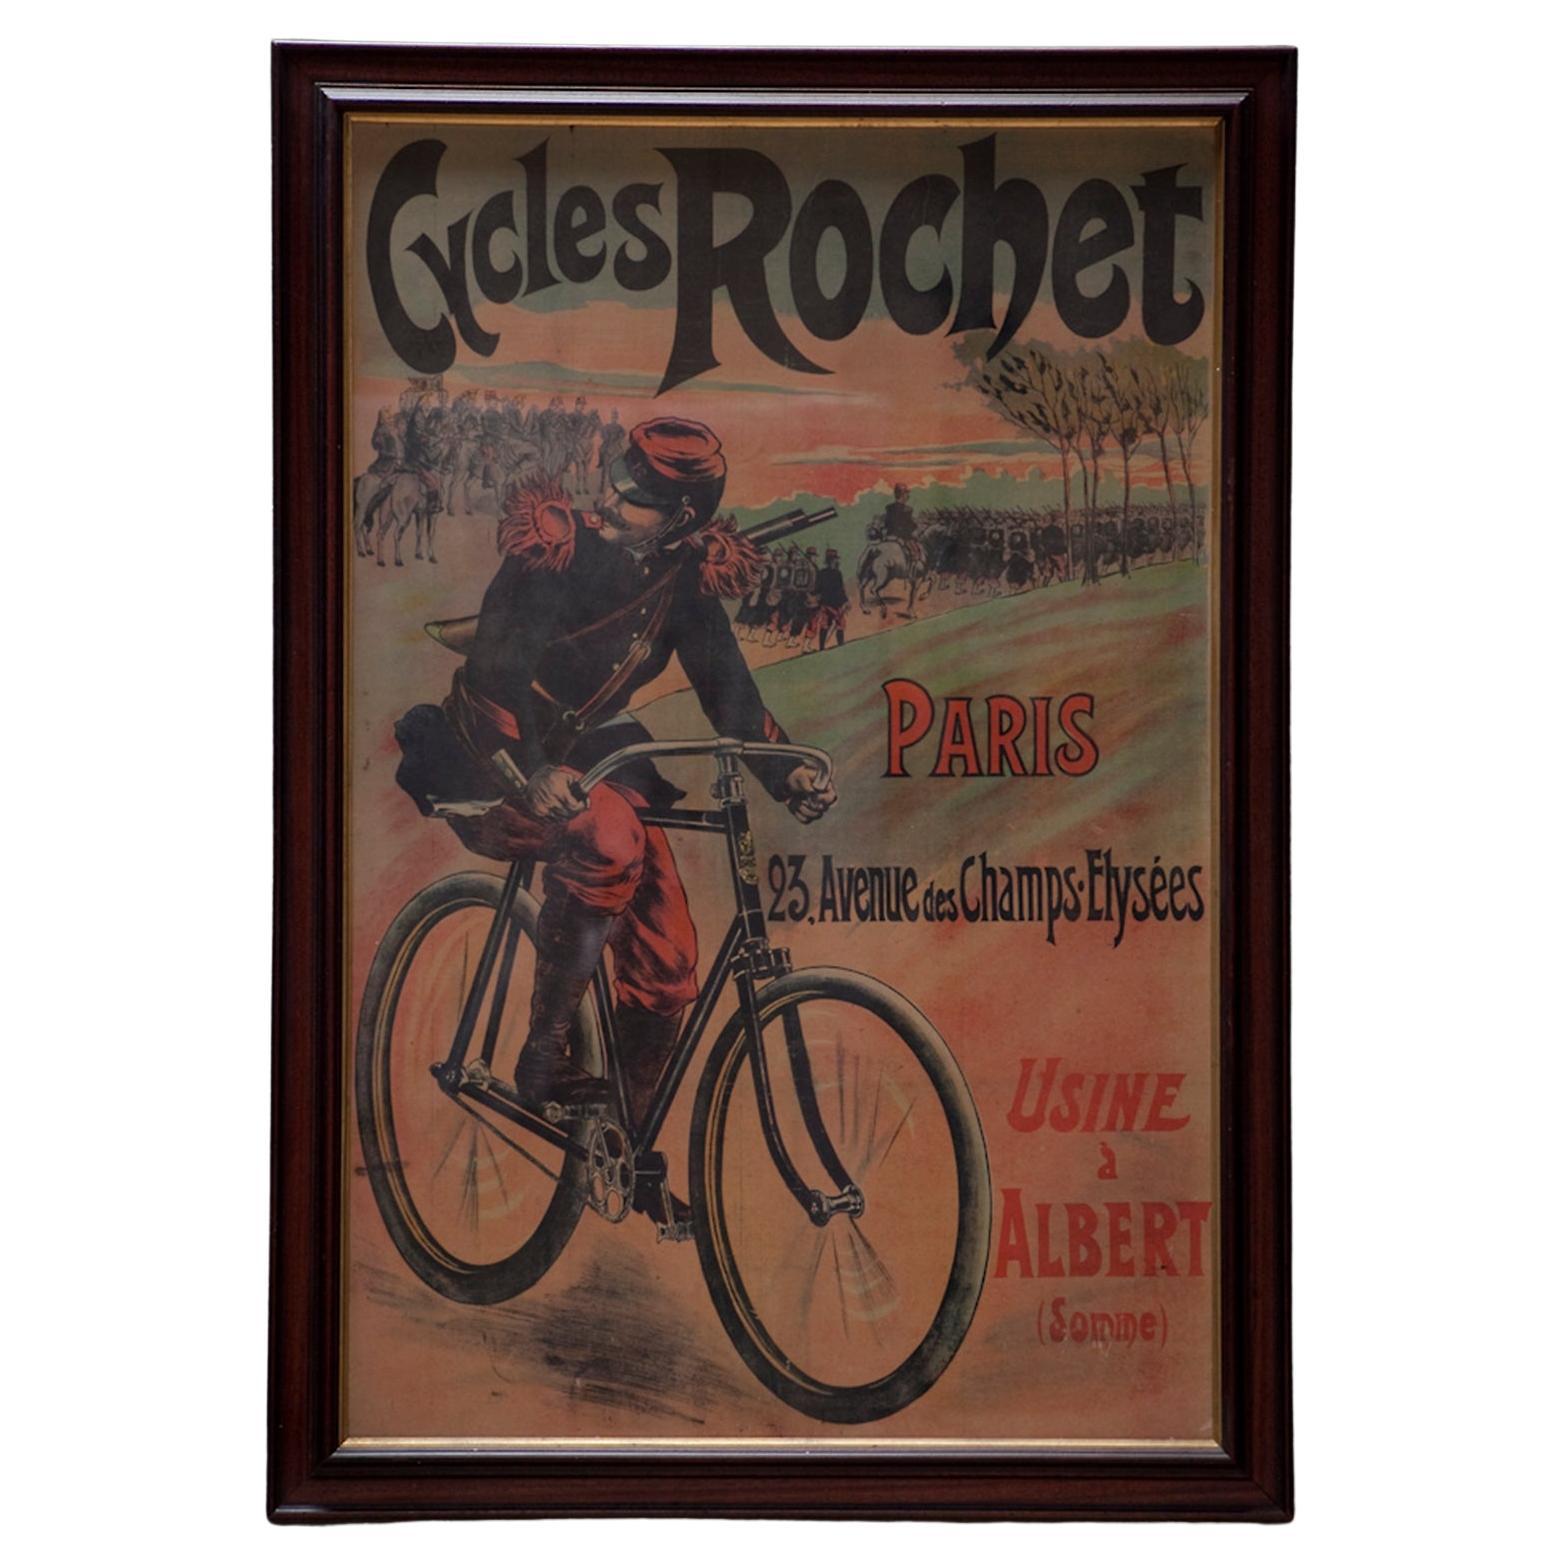 Gerahmtes extragroßes Plakat mit Leinenrückseite für „Cycles Rochet“, um 1895